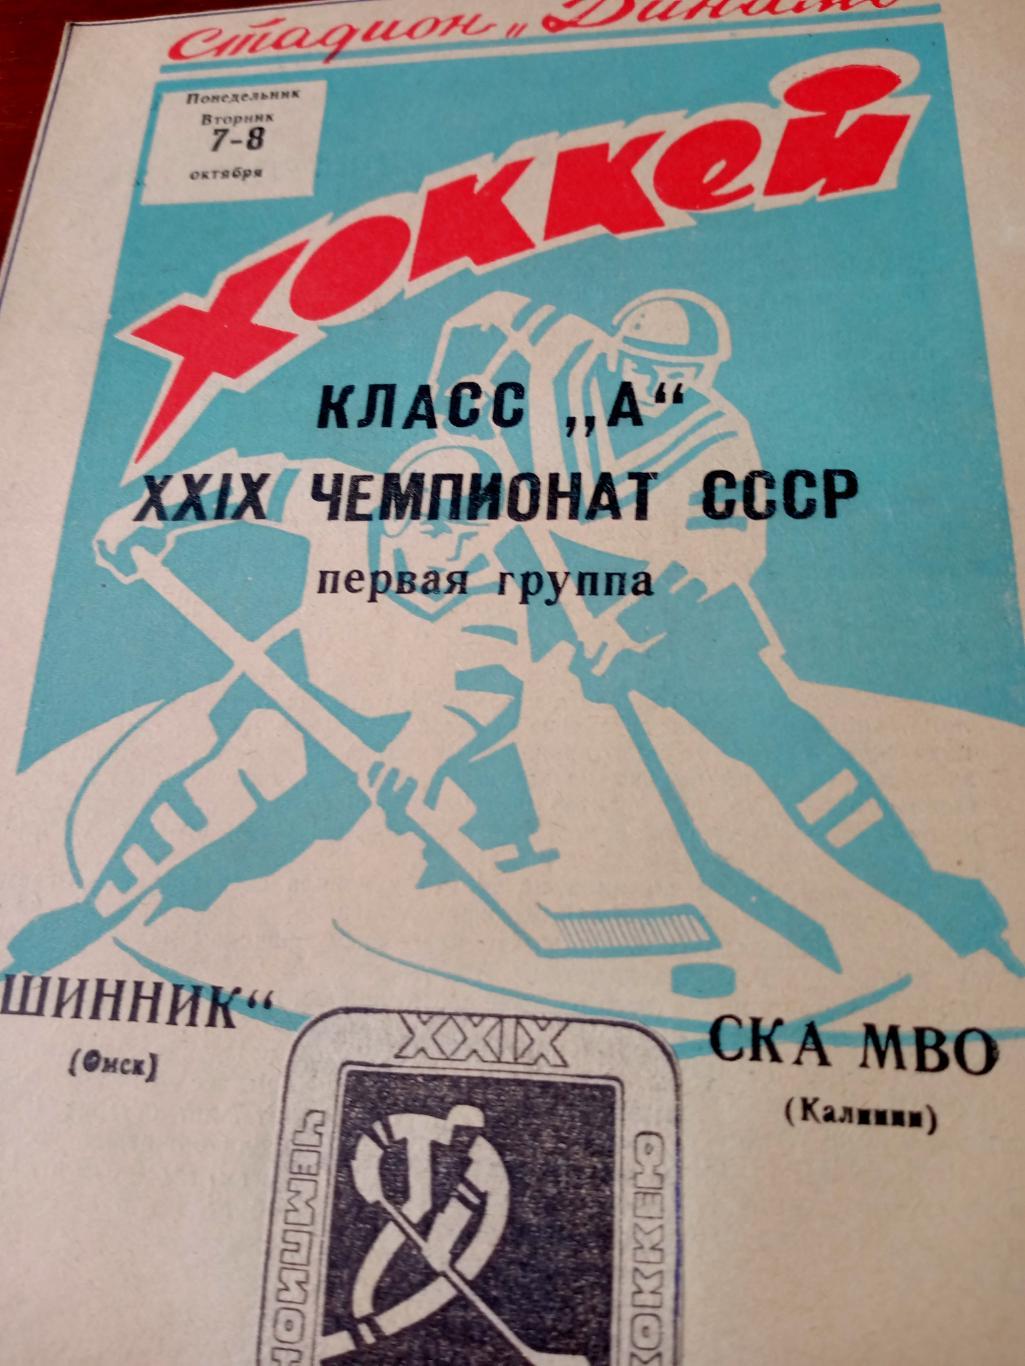 Шинник Омск - СКА МВО Калинин. 7 и 8 октября 1974 год